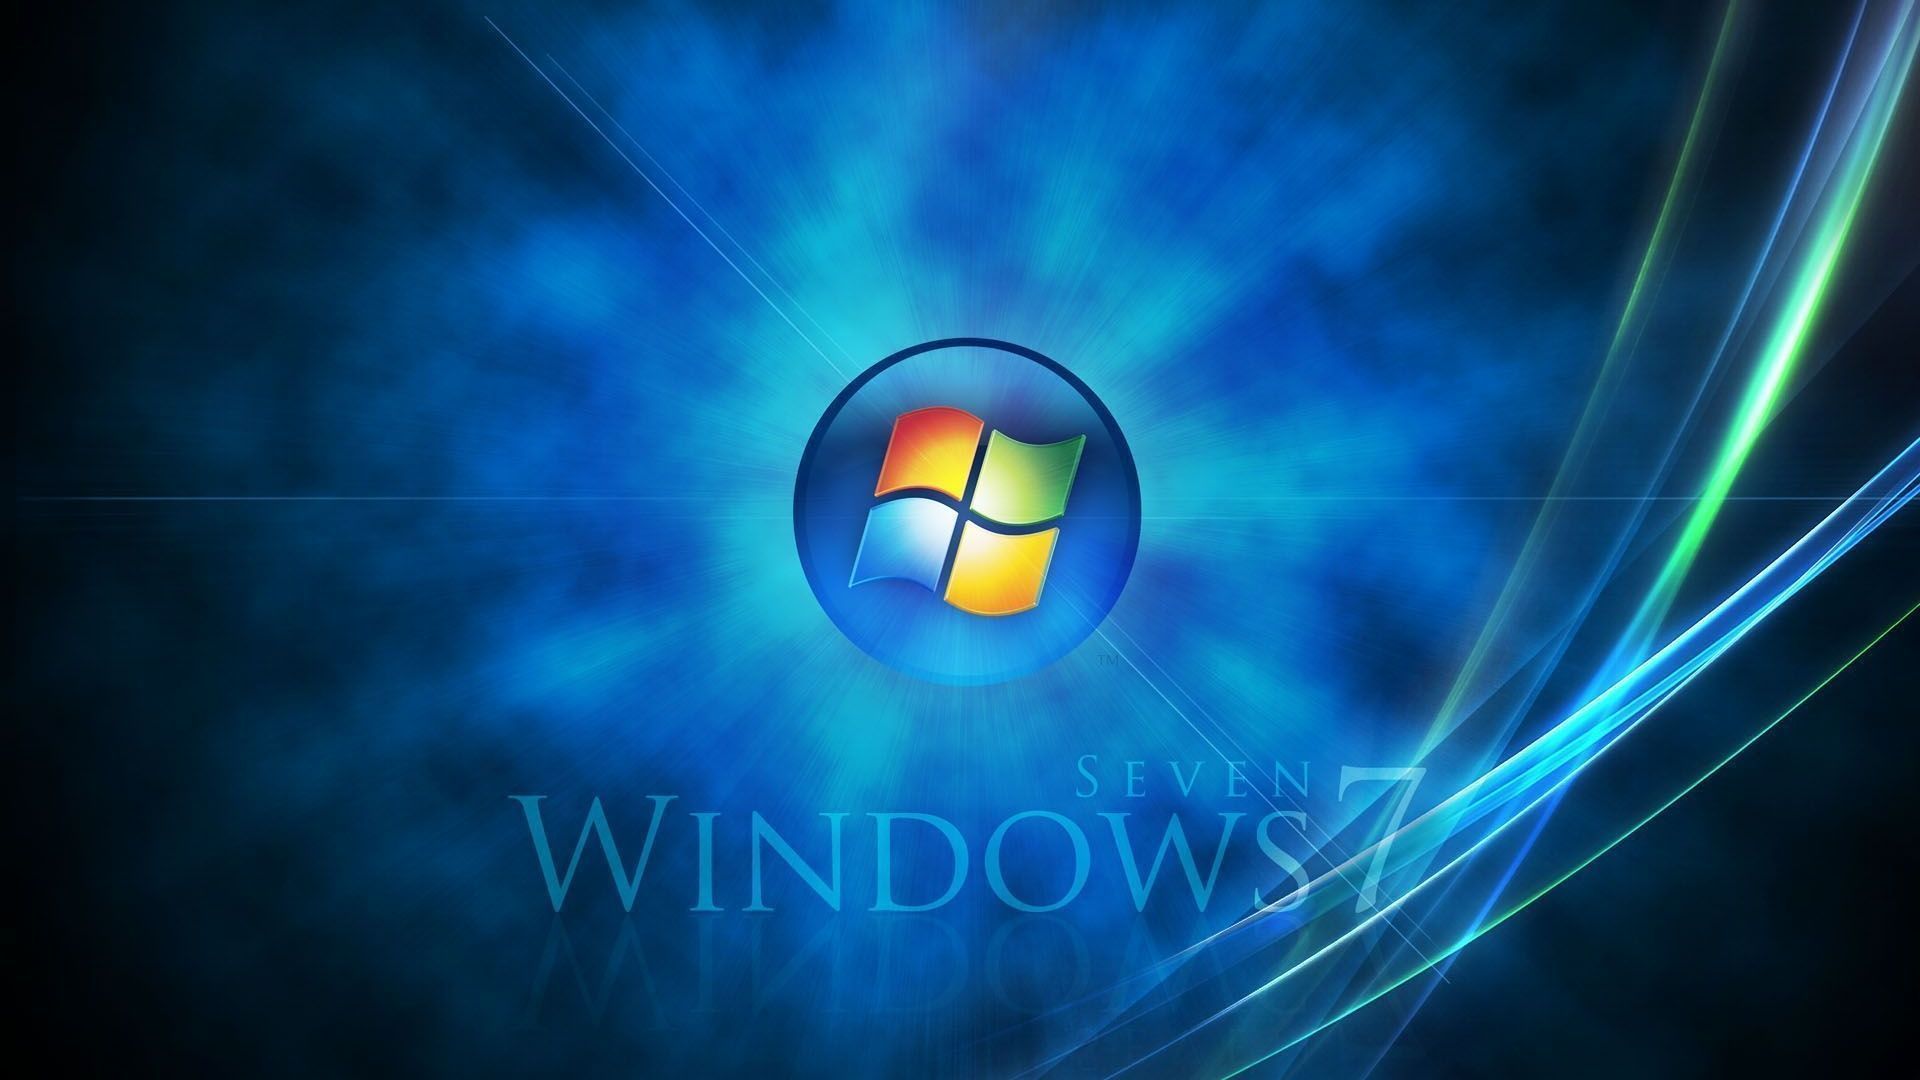 Windows 7 Hd Wallpaper 1920X1080 5